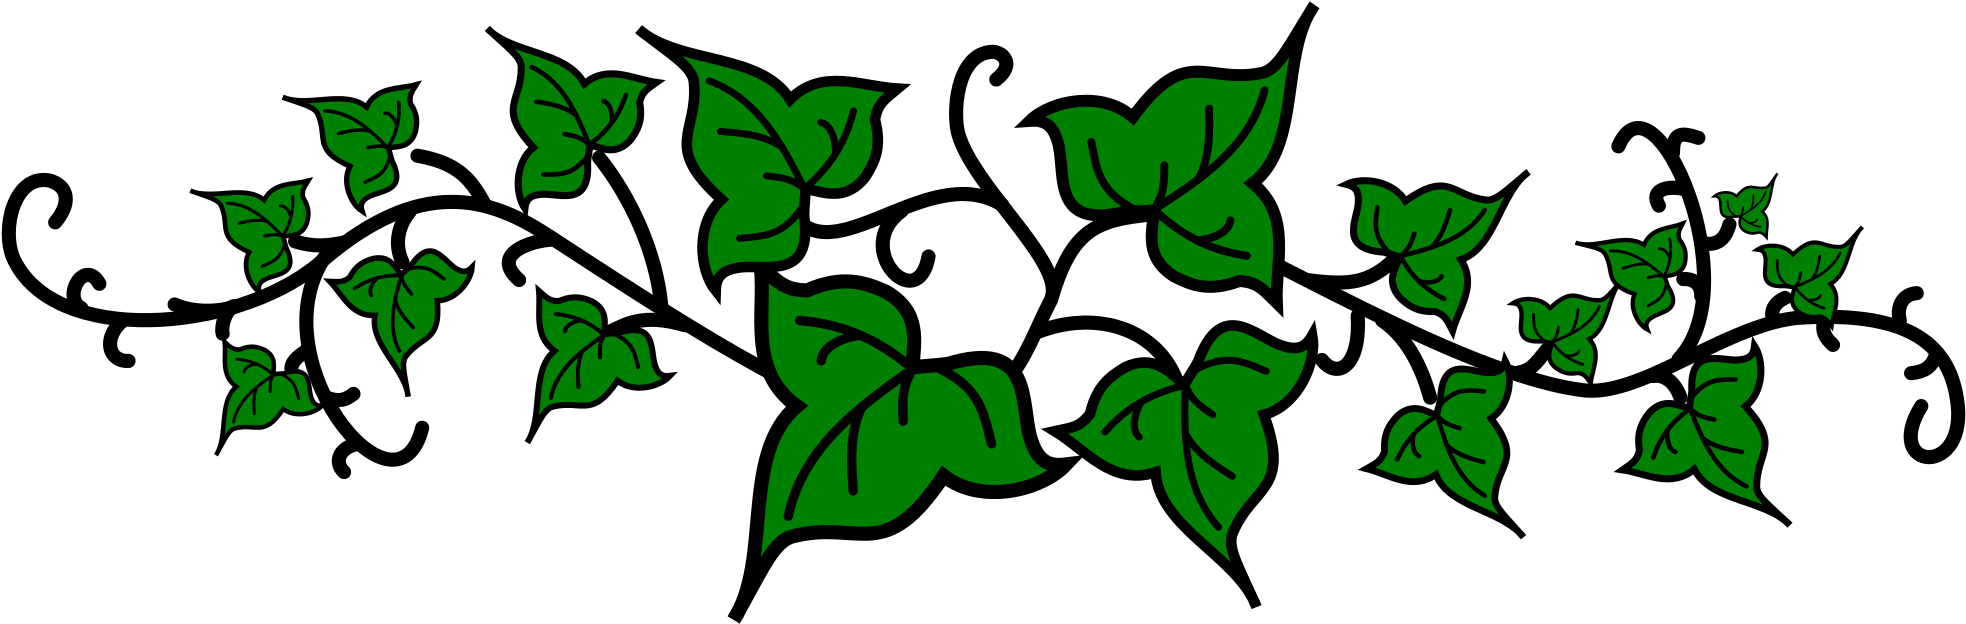 Green Ivy Vine Illustration PNG